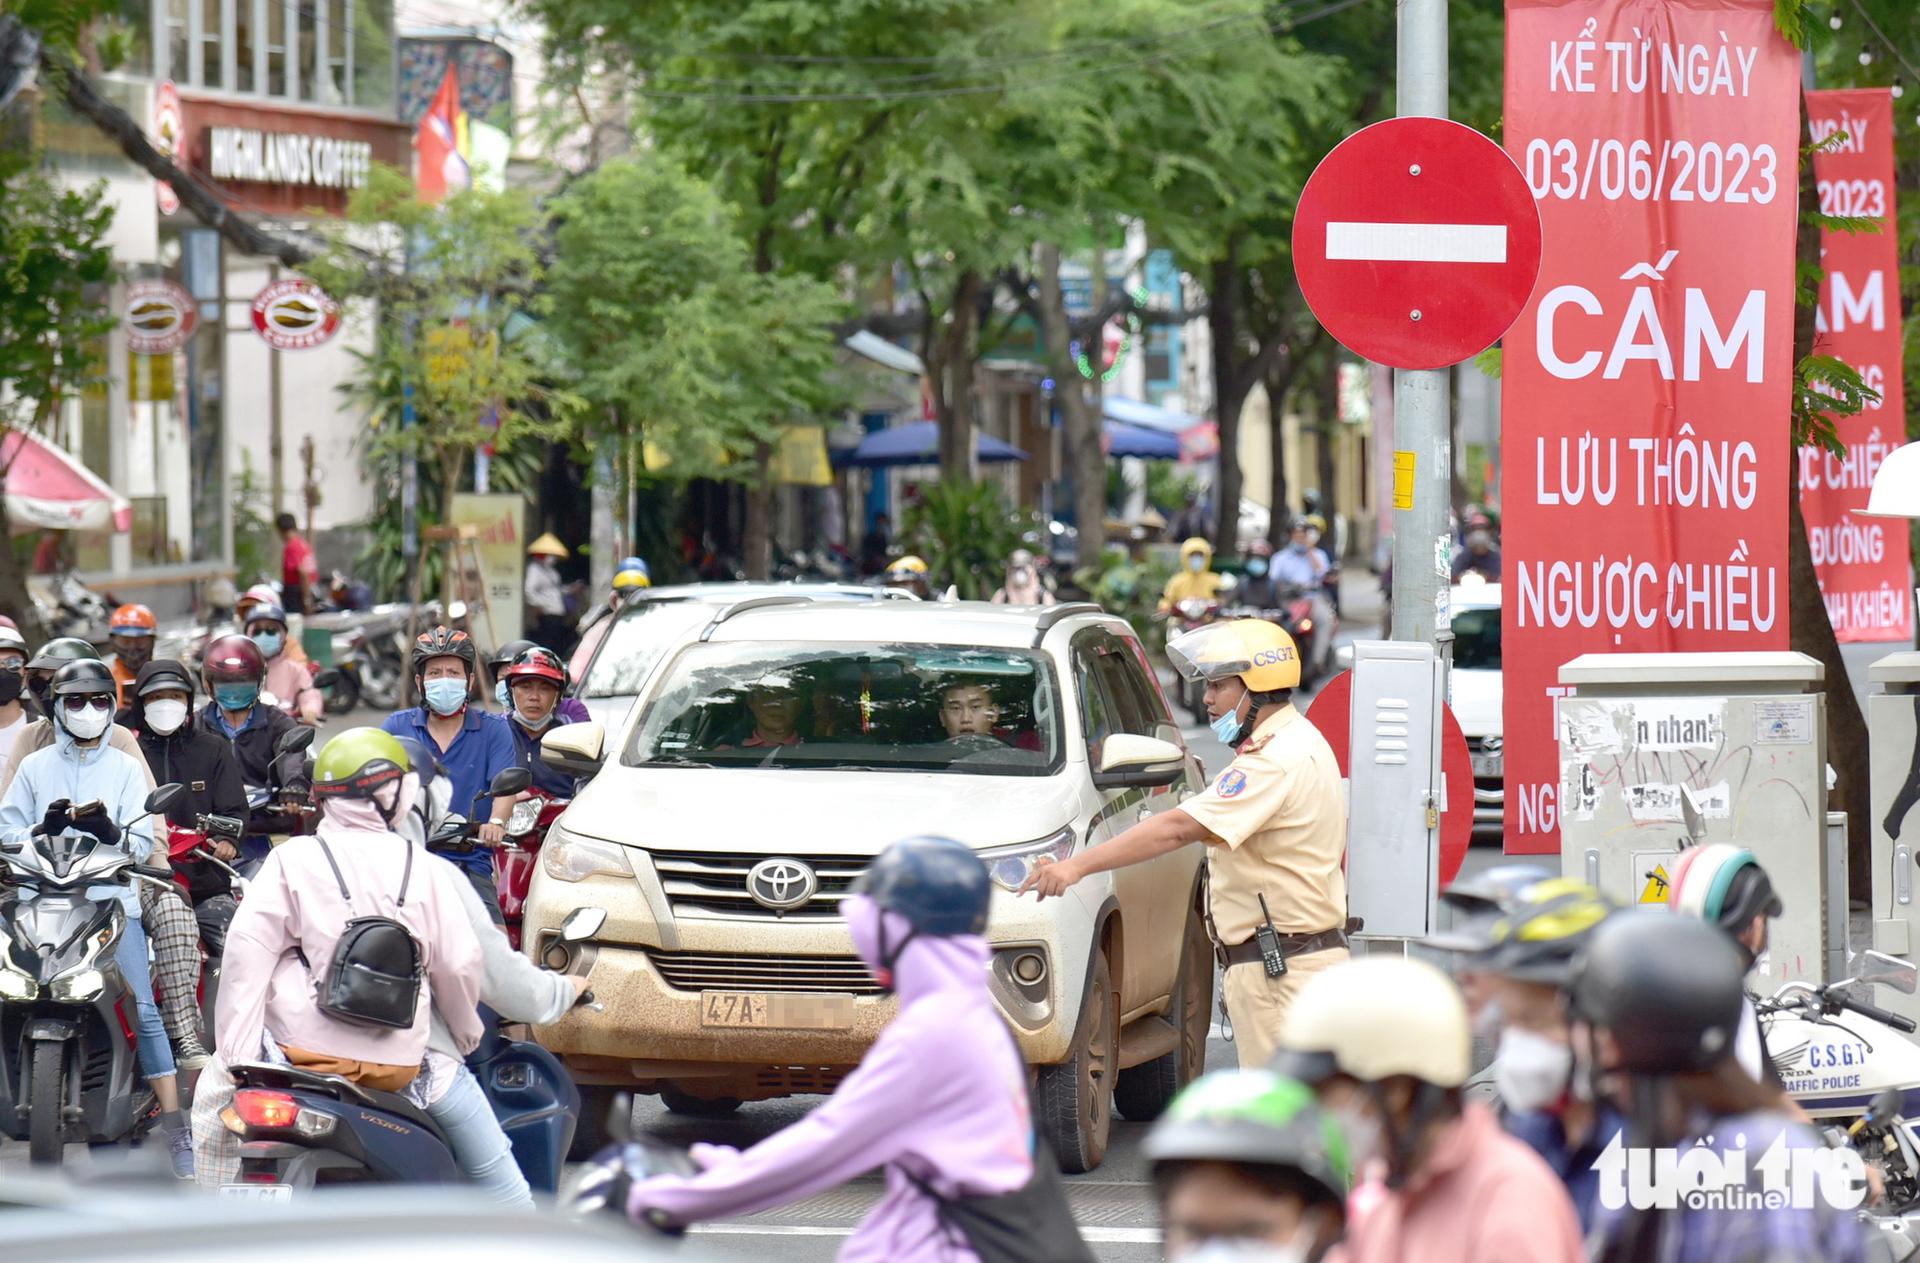 Lực lượng chức năng hướng dẫn người lái xe không đi vào đường Nguyễn Bỉnh Khiêm đoạn vừa chuyển sang một chiều. Ảnh: T.T.D/Tuổi trẻ